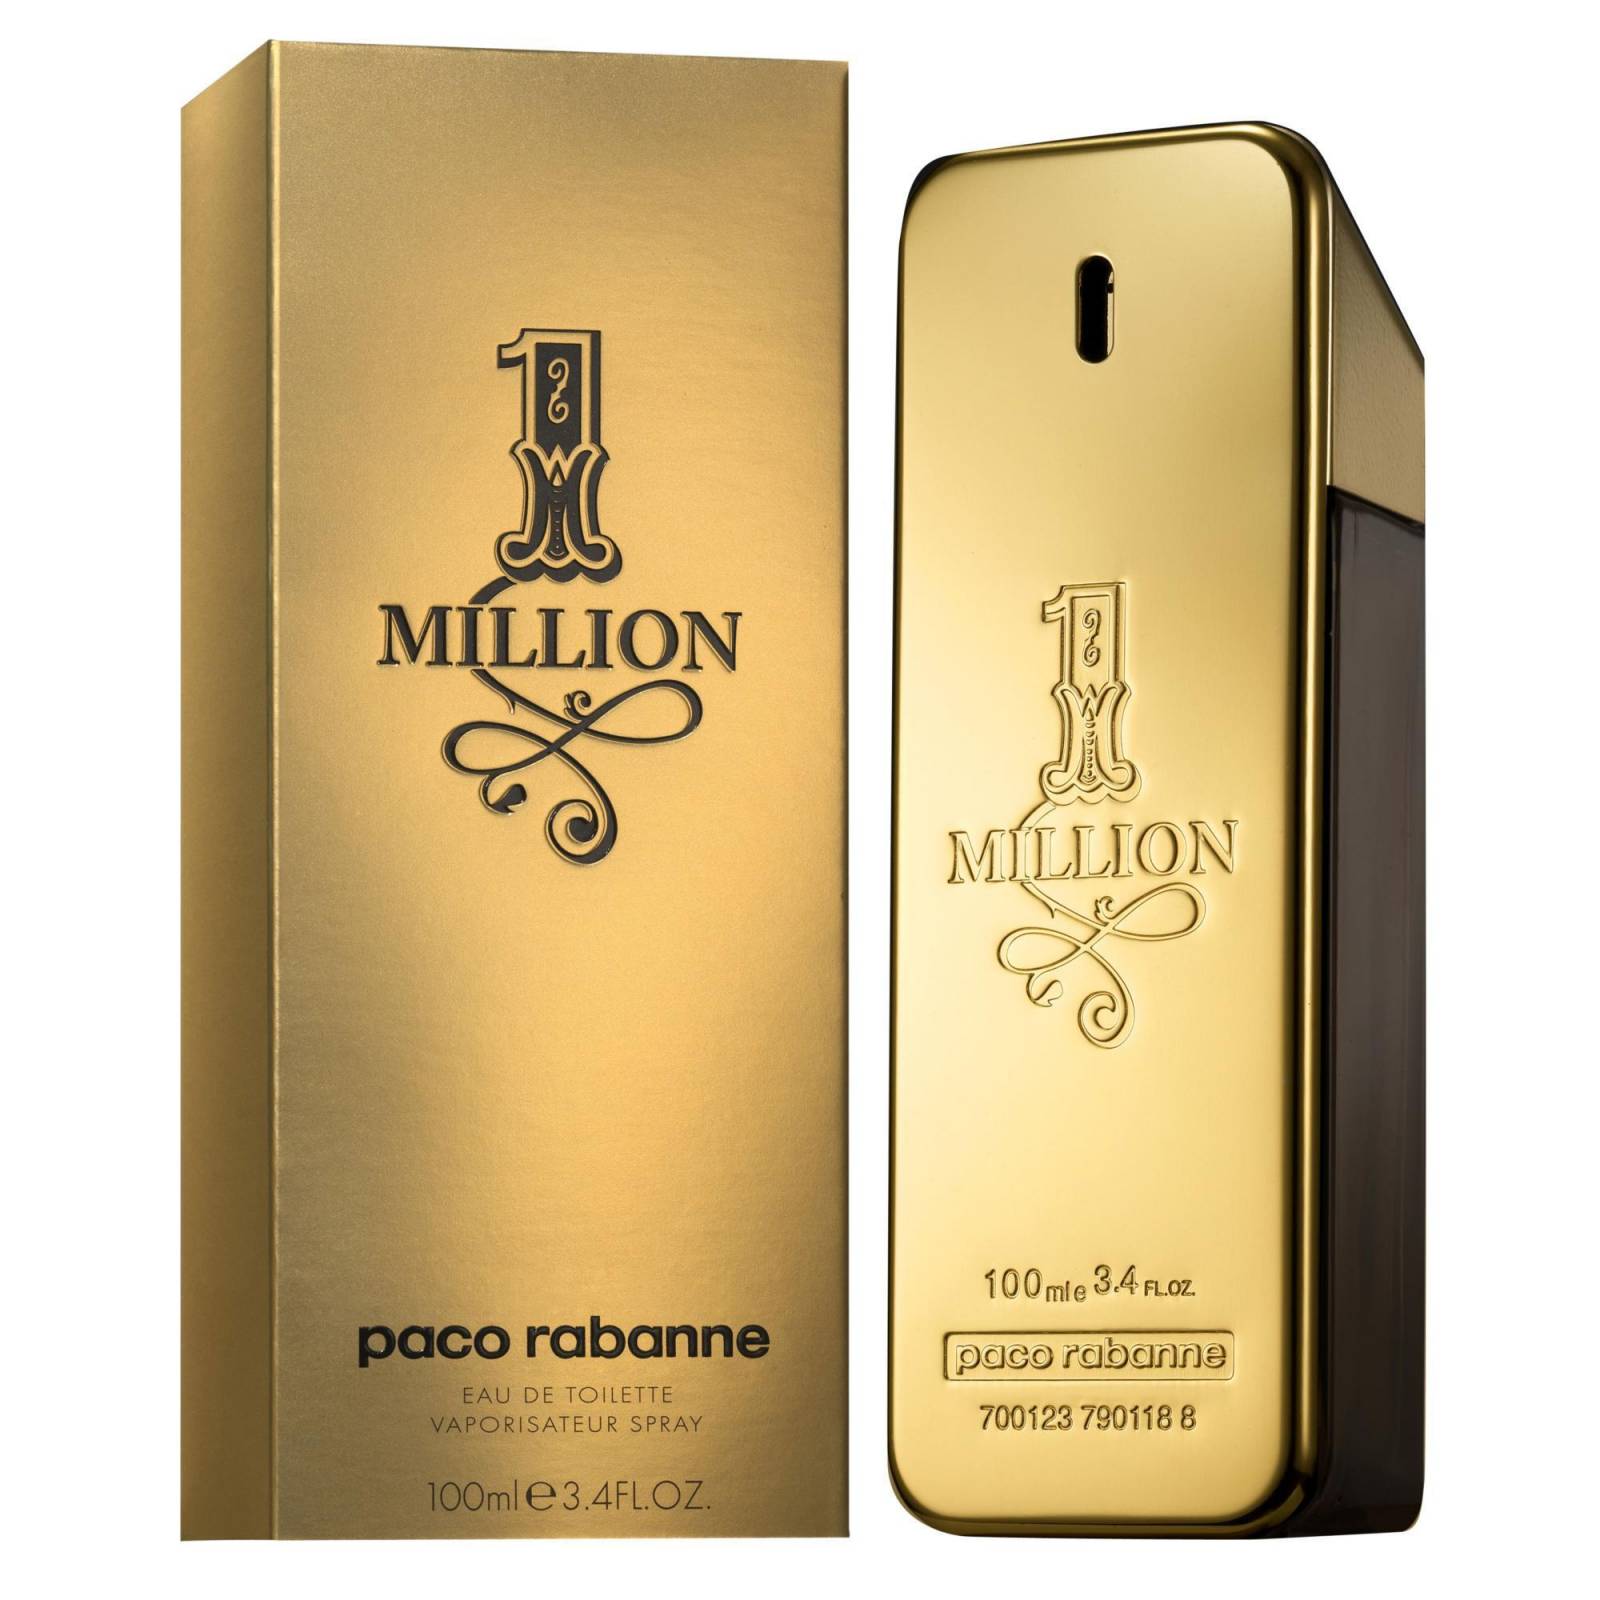 Perfume 1 Million Hombre de Paco Rabanne edt 100ml